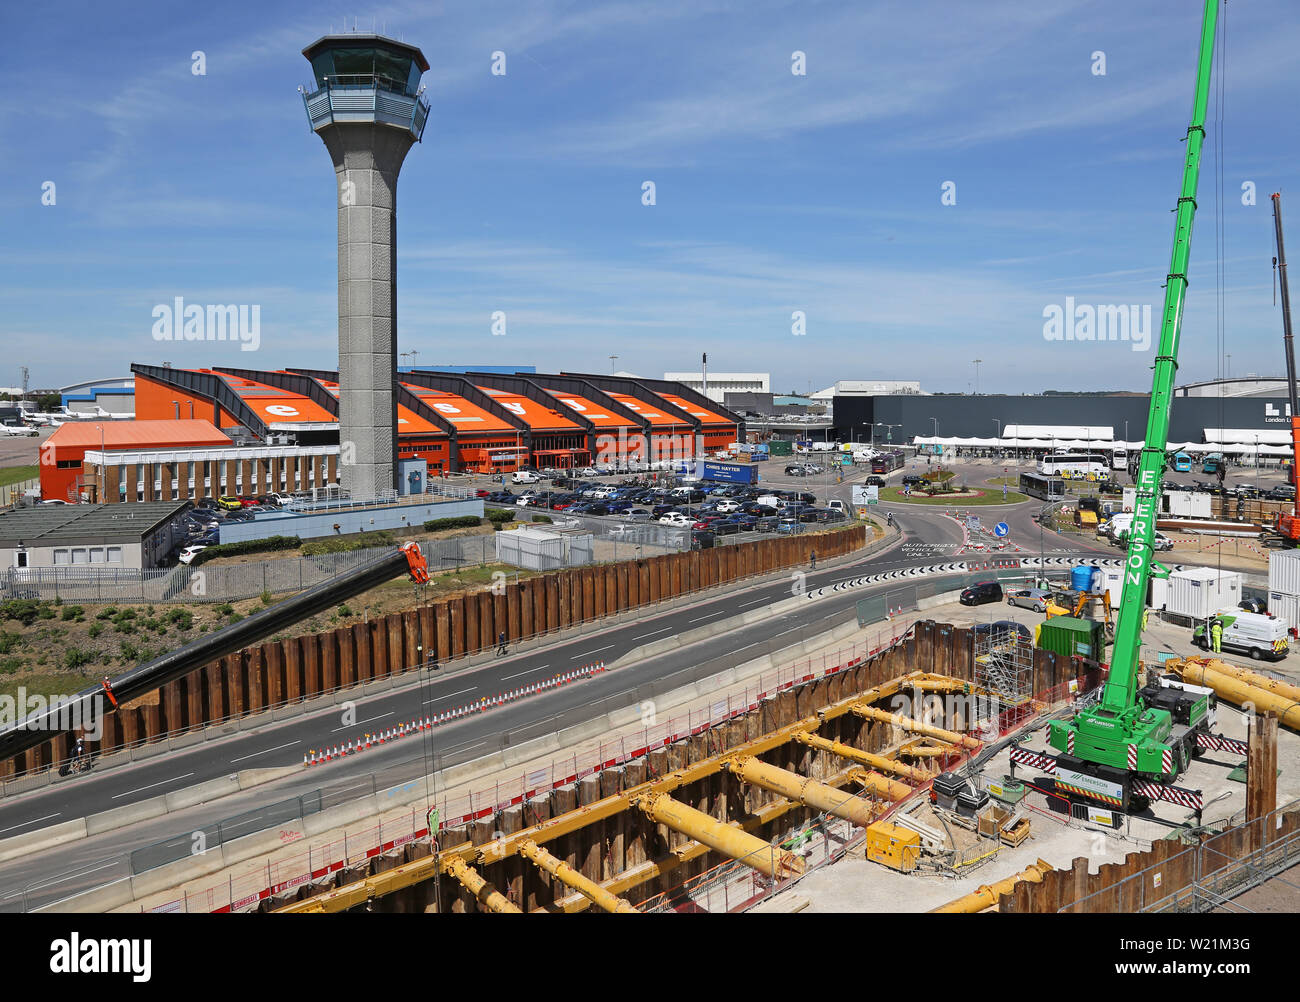 London Luton Airport, zentralen Bereich mit Easyjet Head Office, tower Baugrube für den neuen DART-Bahn Link - fällig in 2021 zu öffnen. Stockfoto